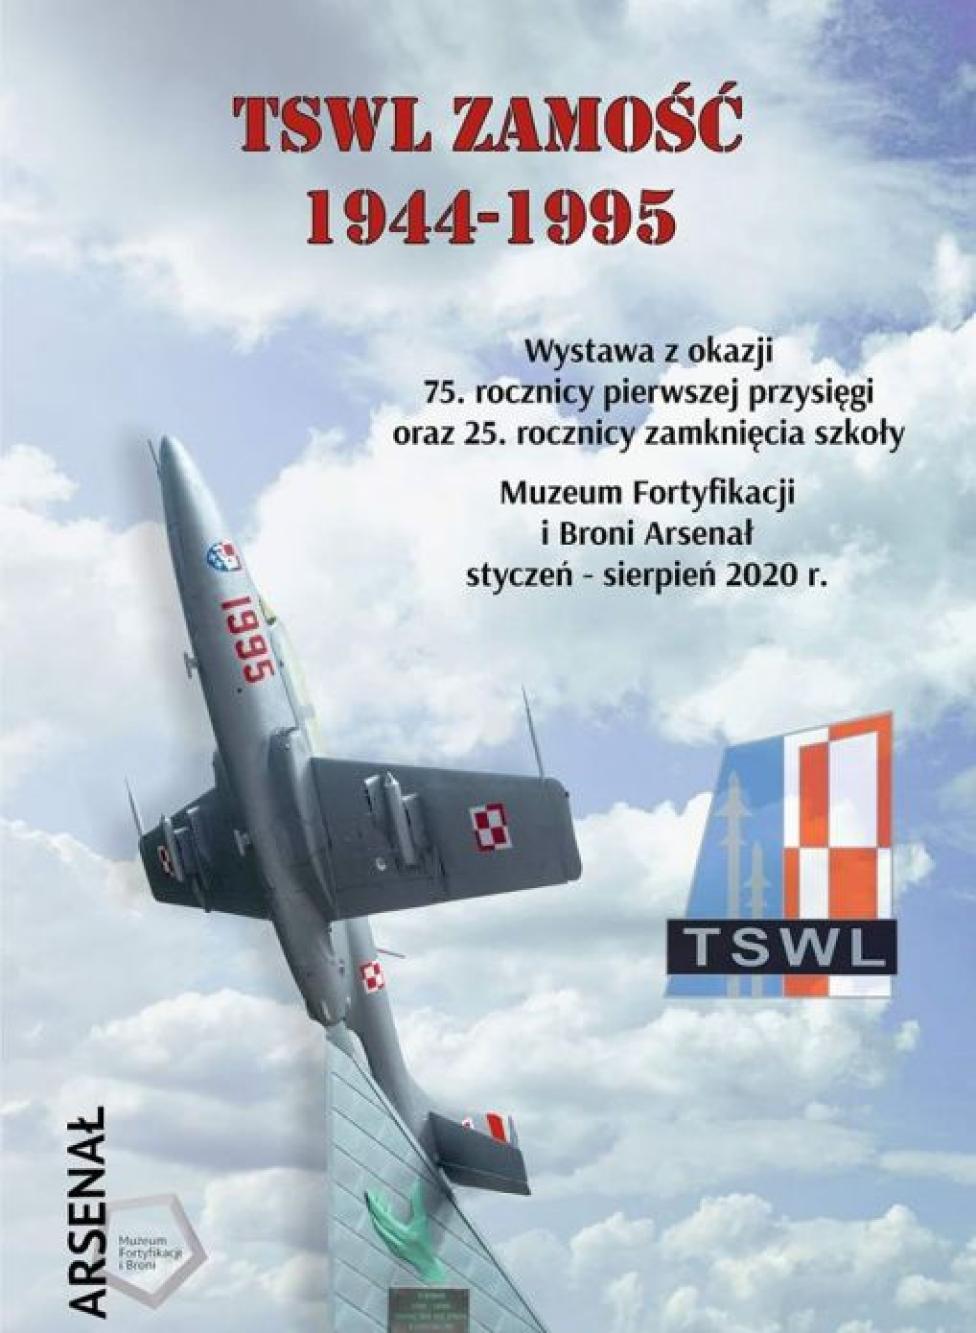 Wystawa "TSWL Zamość 1944-1995" (fot. TSWL/Facebook)